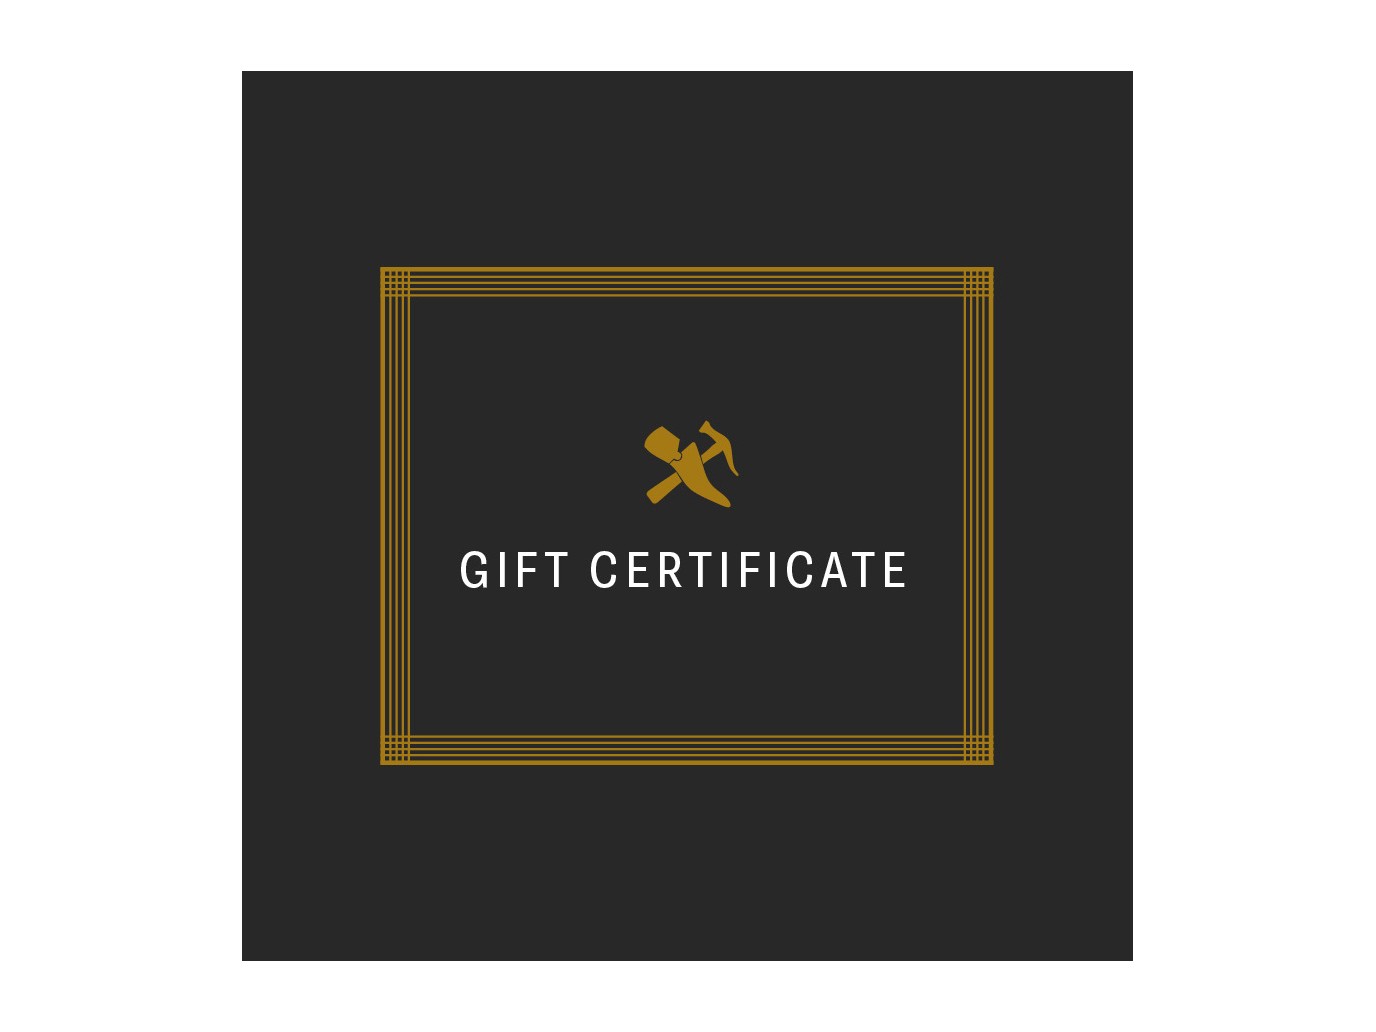 Gift Certificate - Online